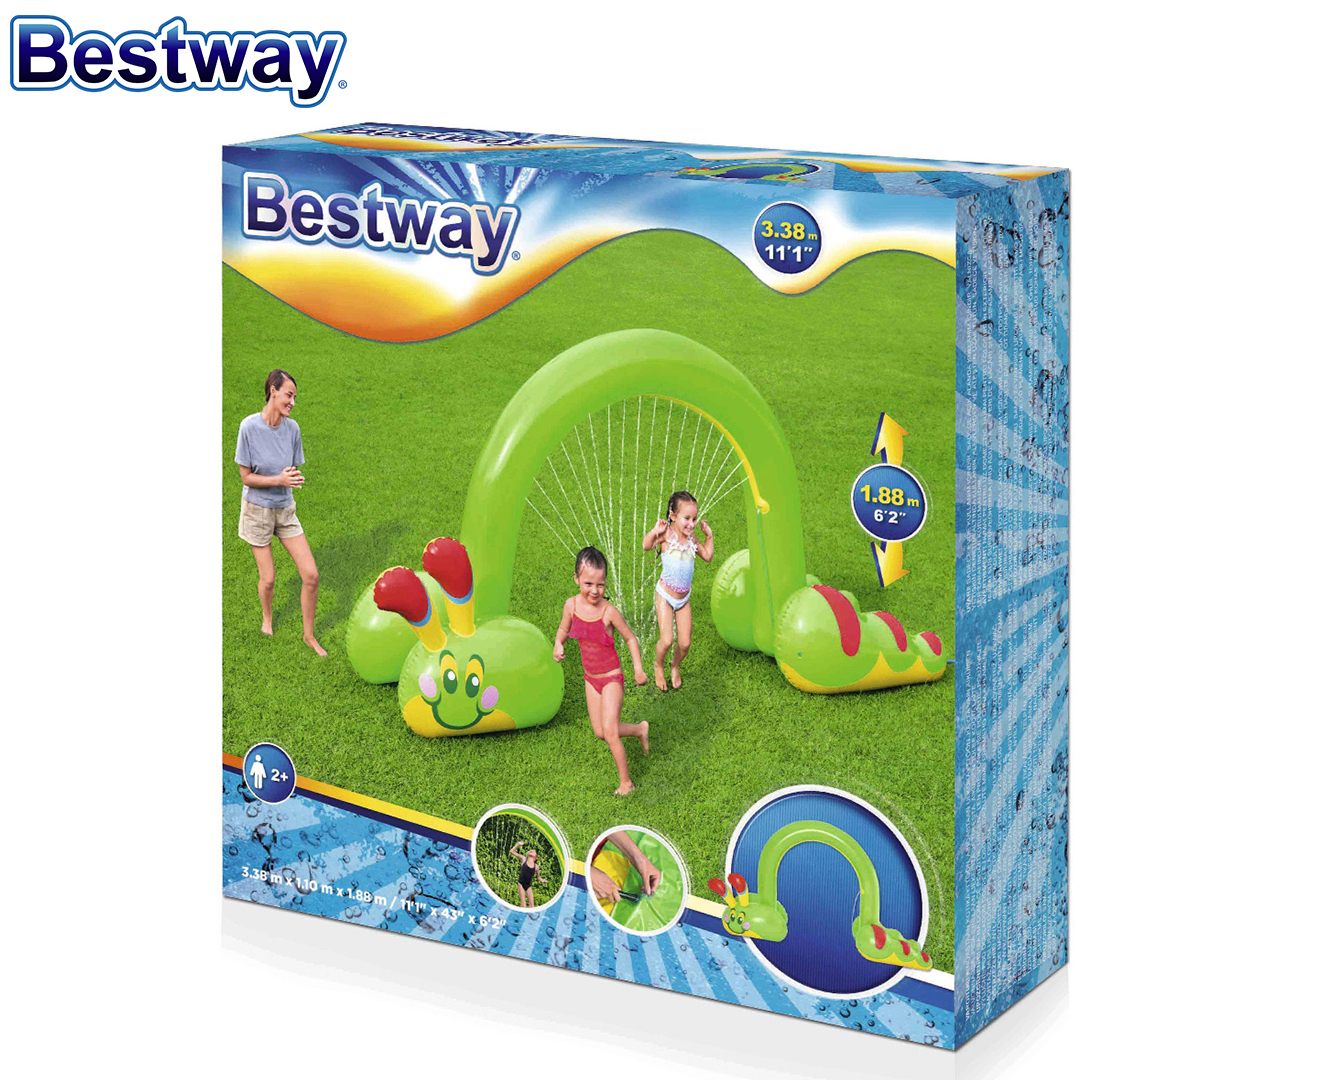 Bestway Jumbo Caterpillar Sprinkler - Green/Multi